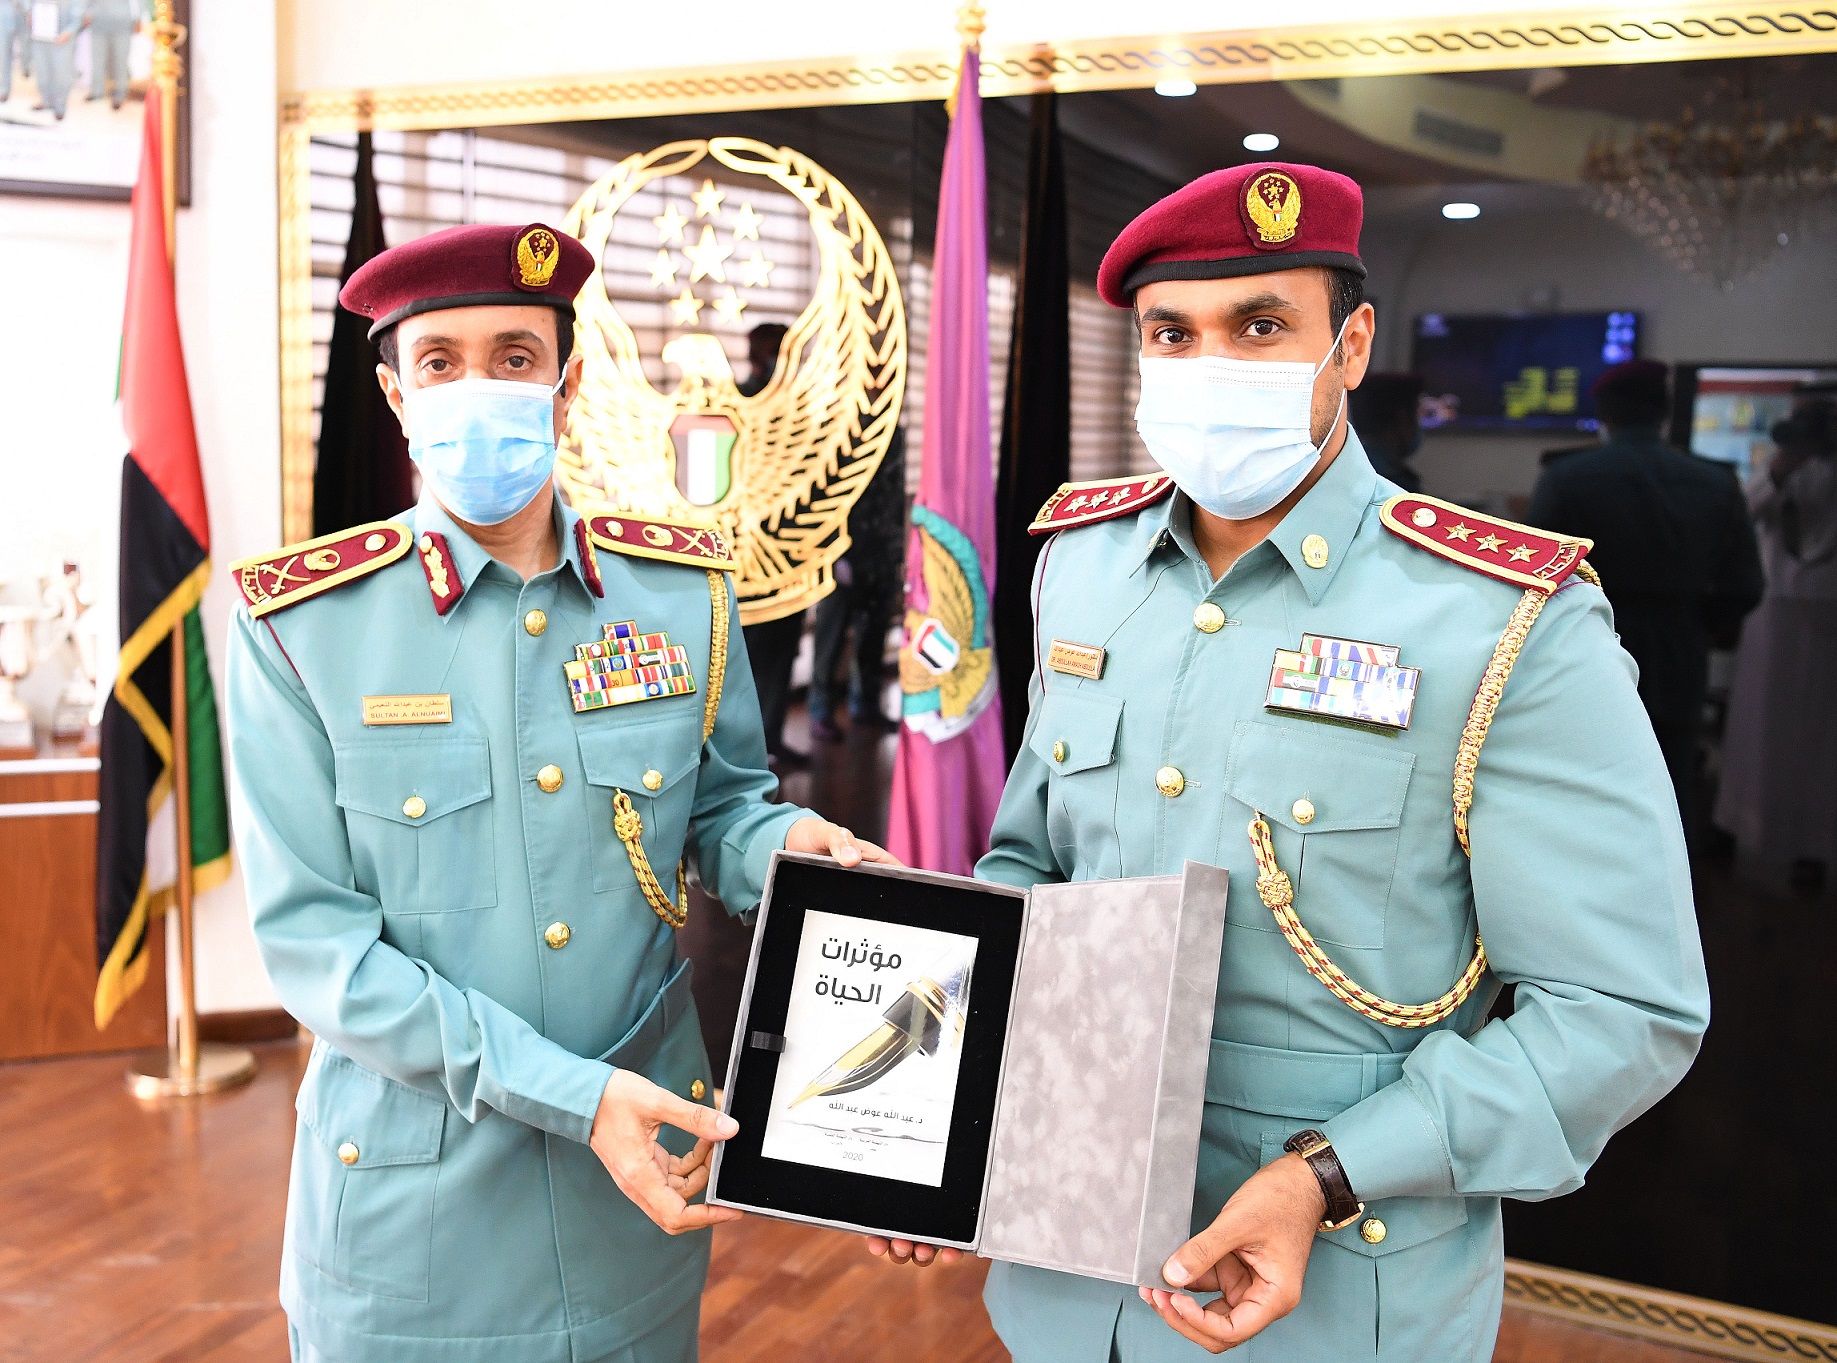 ضابط بشرطة عجمان يهدي اللواء الشيخ سلطان النعيمي كتاباً ألفه بعنوان "مؤثرات الحياة"